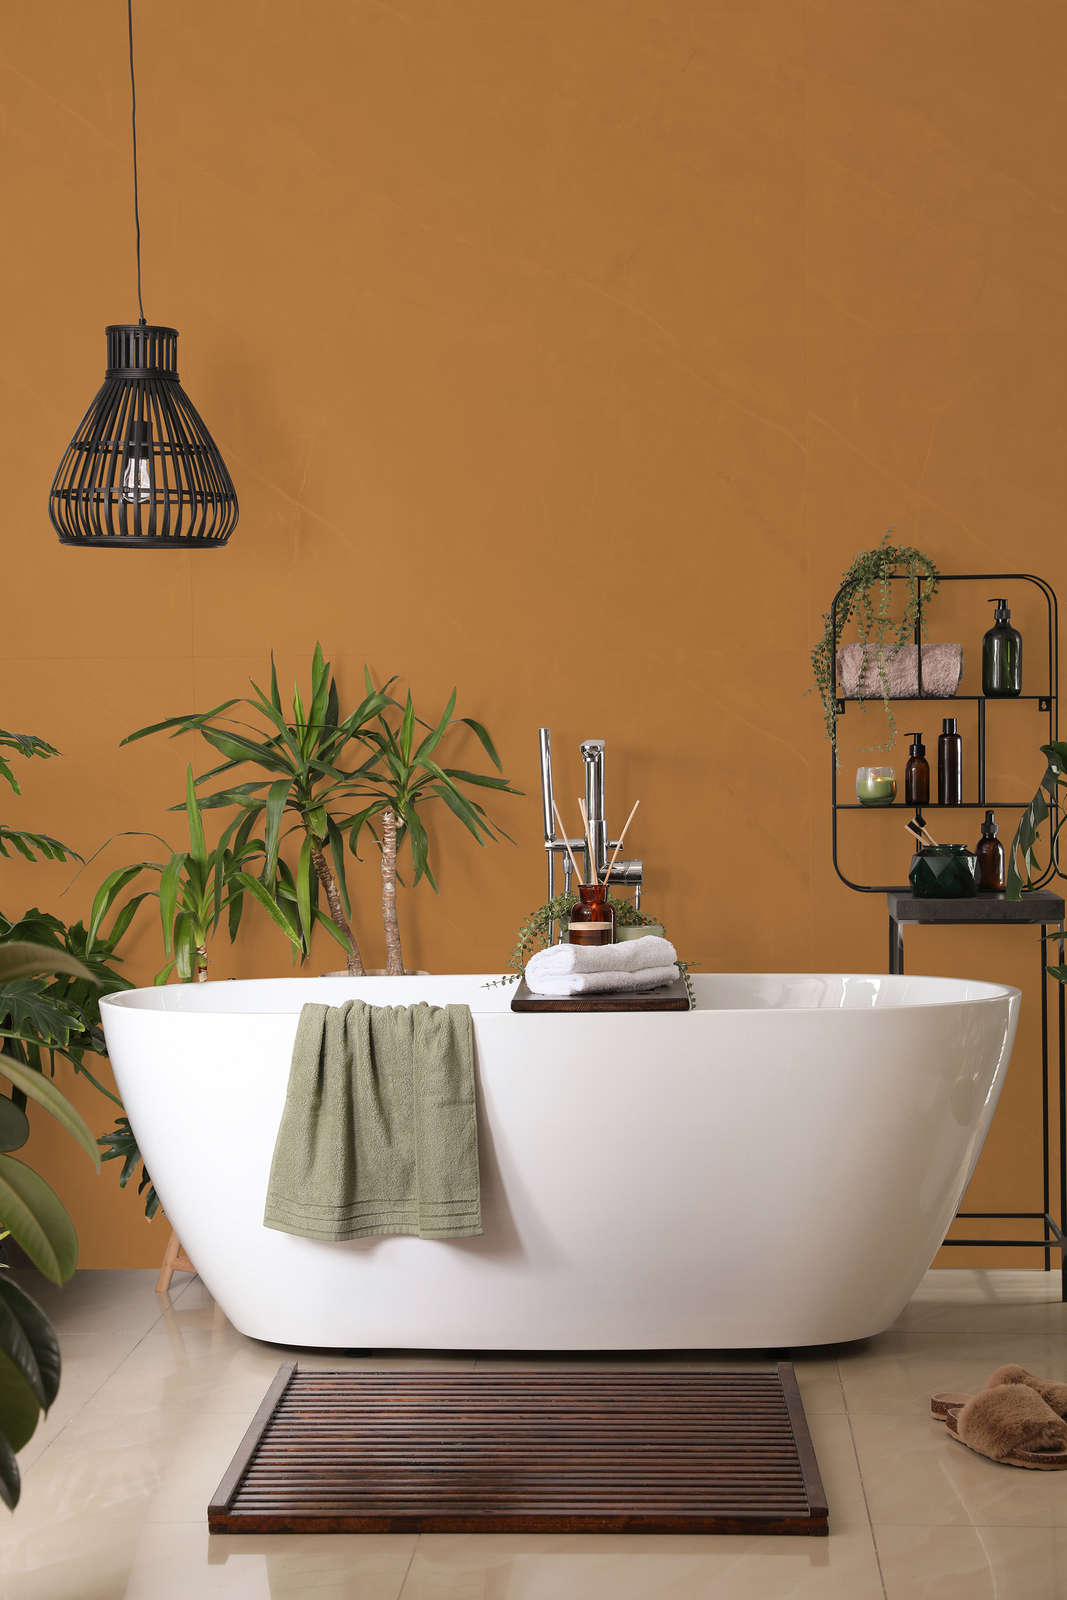             Premium Wandfarbe kräftiges Hellbraun »Beige Orange/Sassy Saffron« NW814 – 2,5 Liter
        